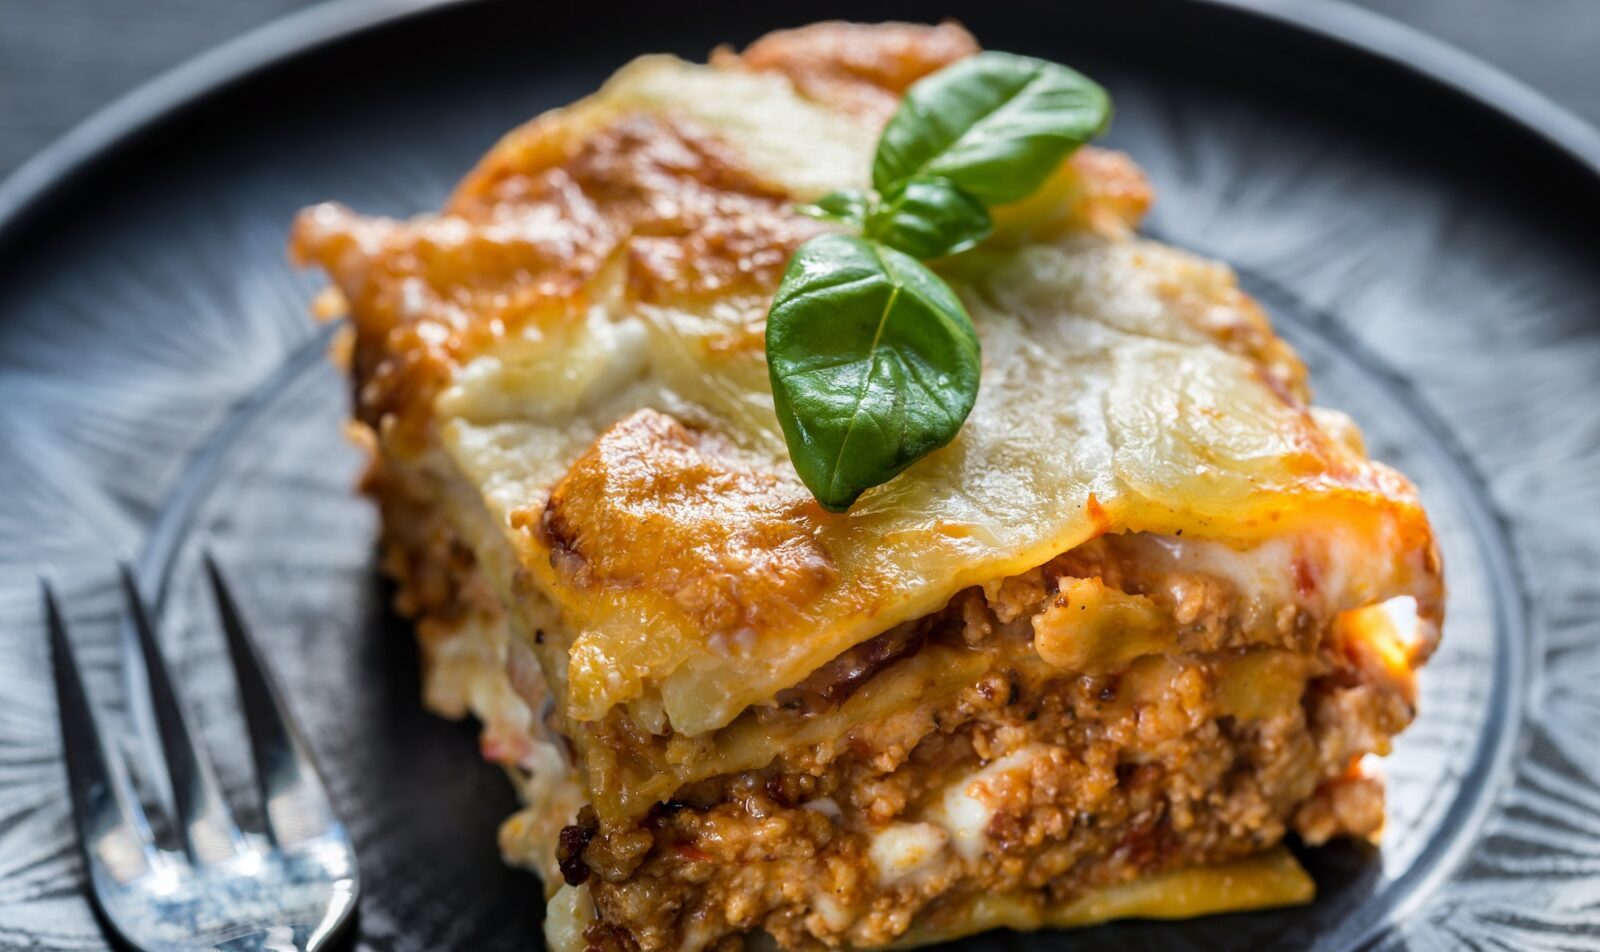 Lasagna with pesto